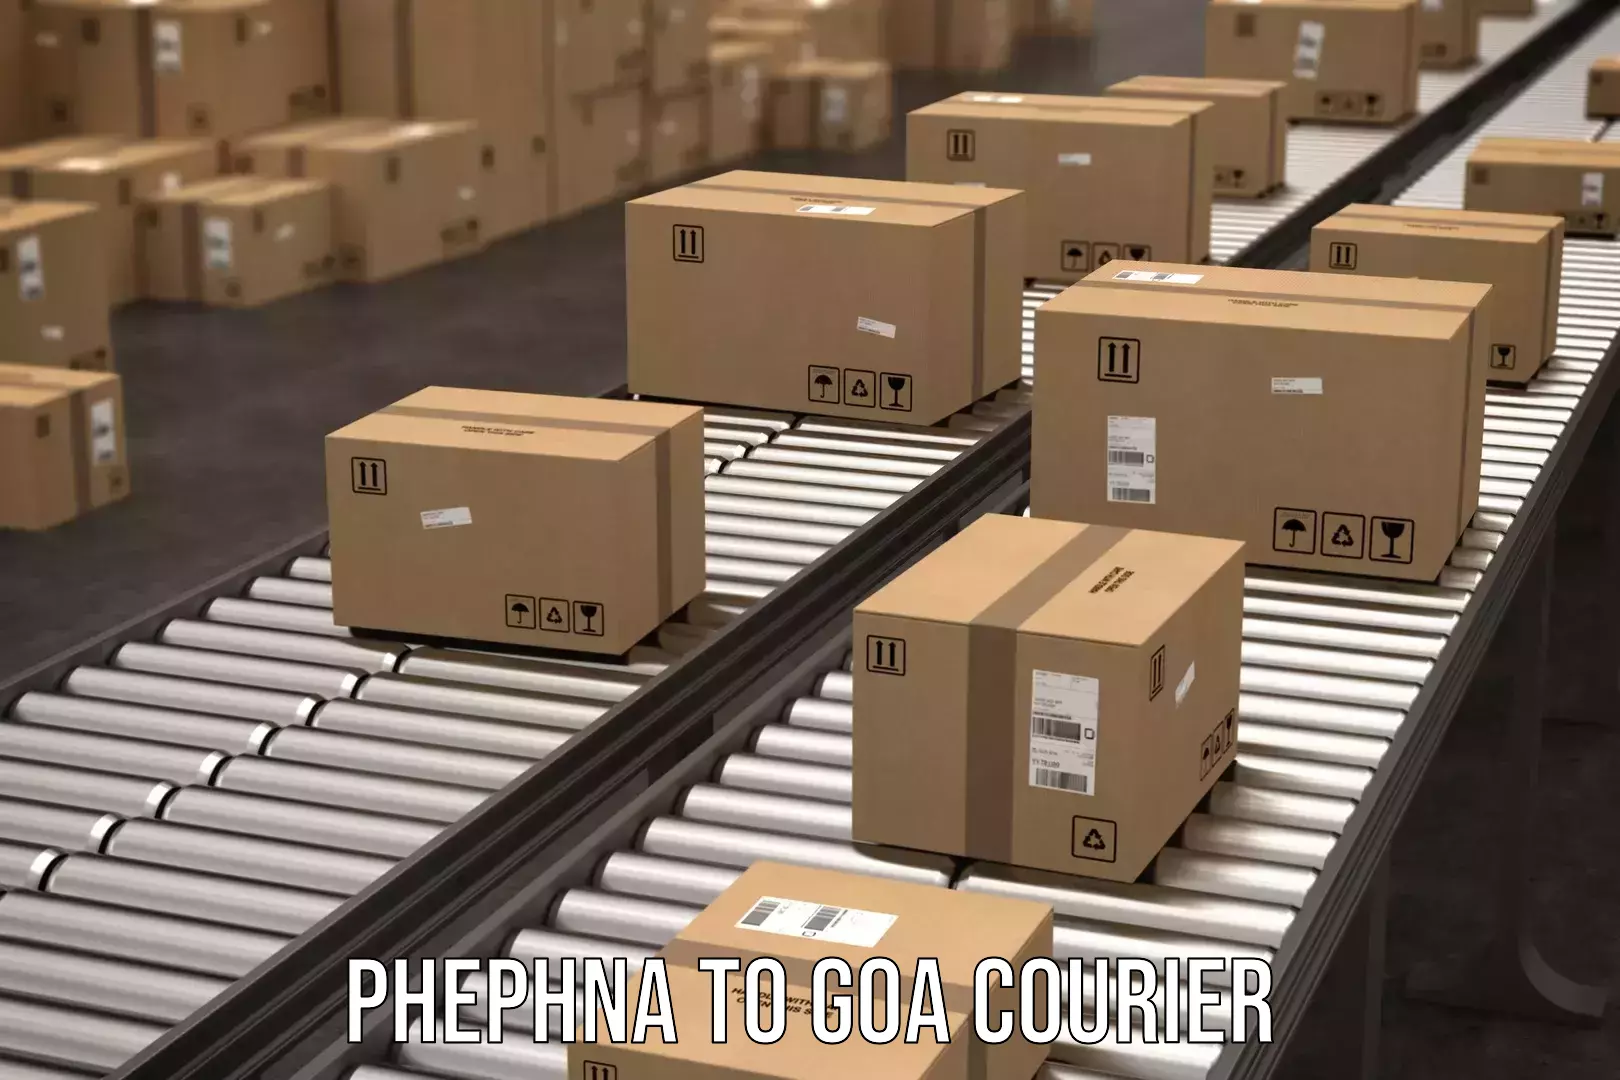 Enhanced tracking features Phephna to IIT Goa